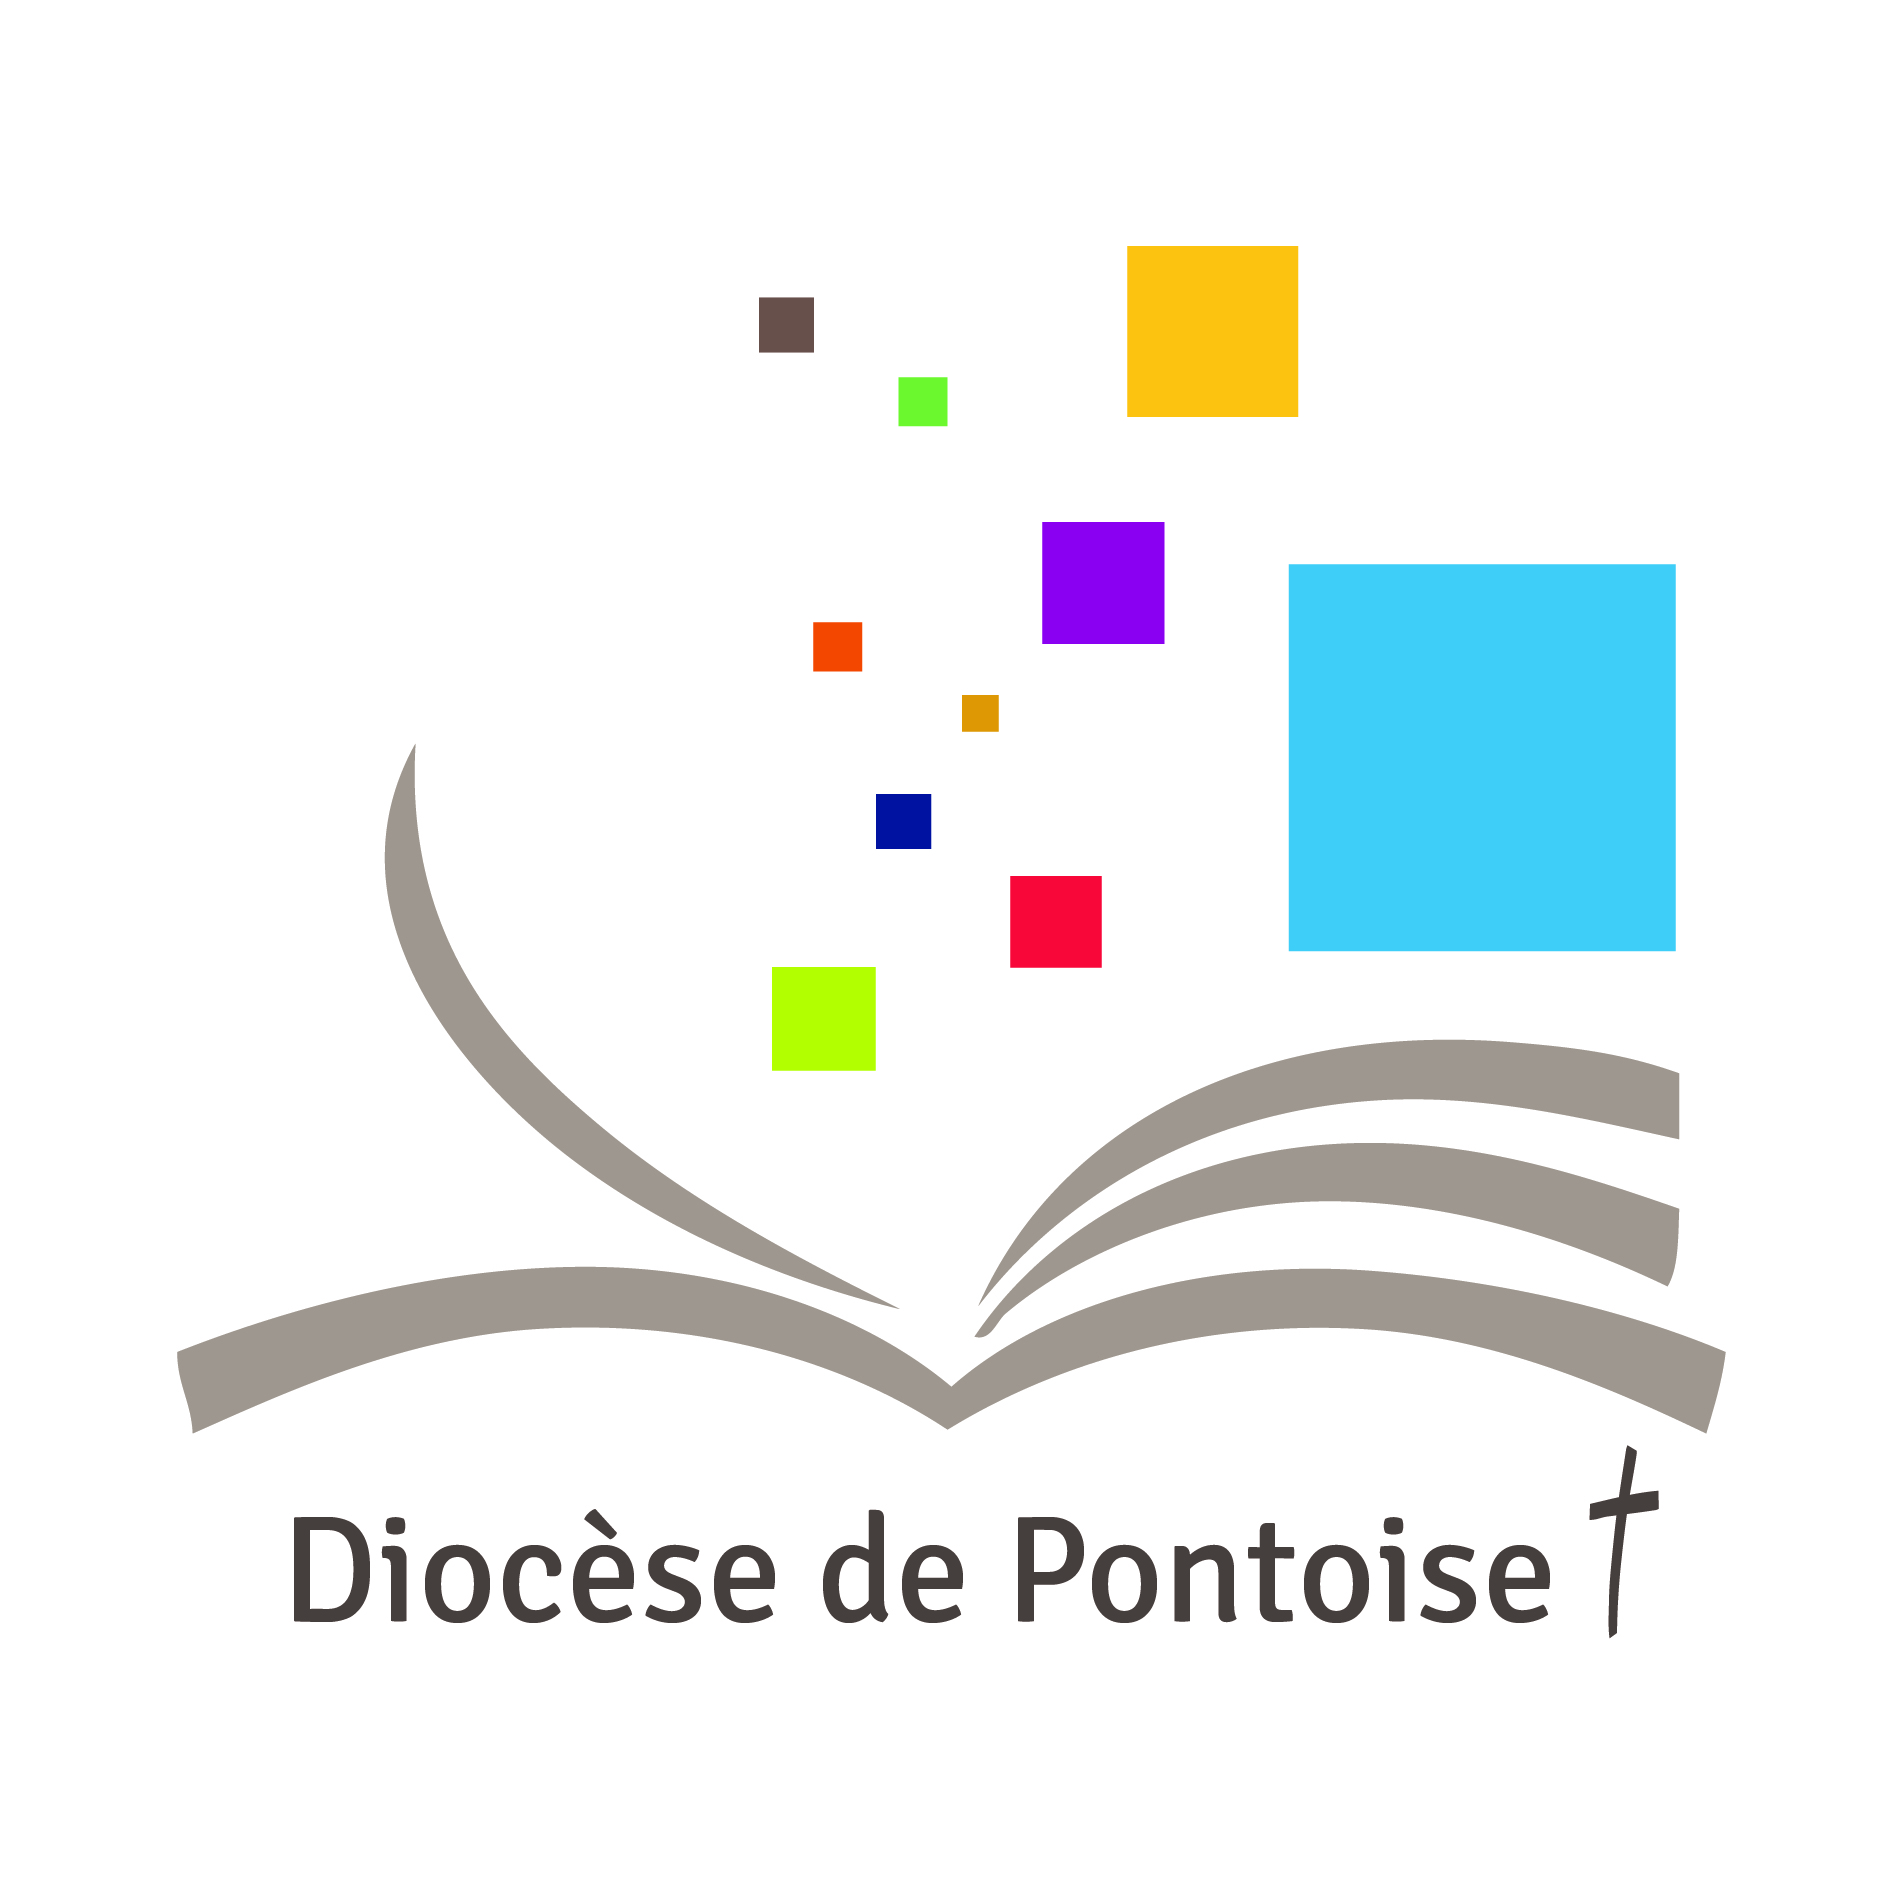 Pontoise - Église catholique en France